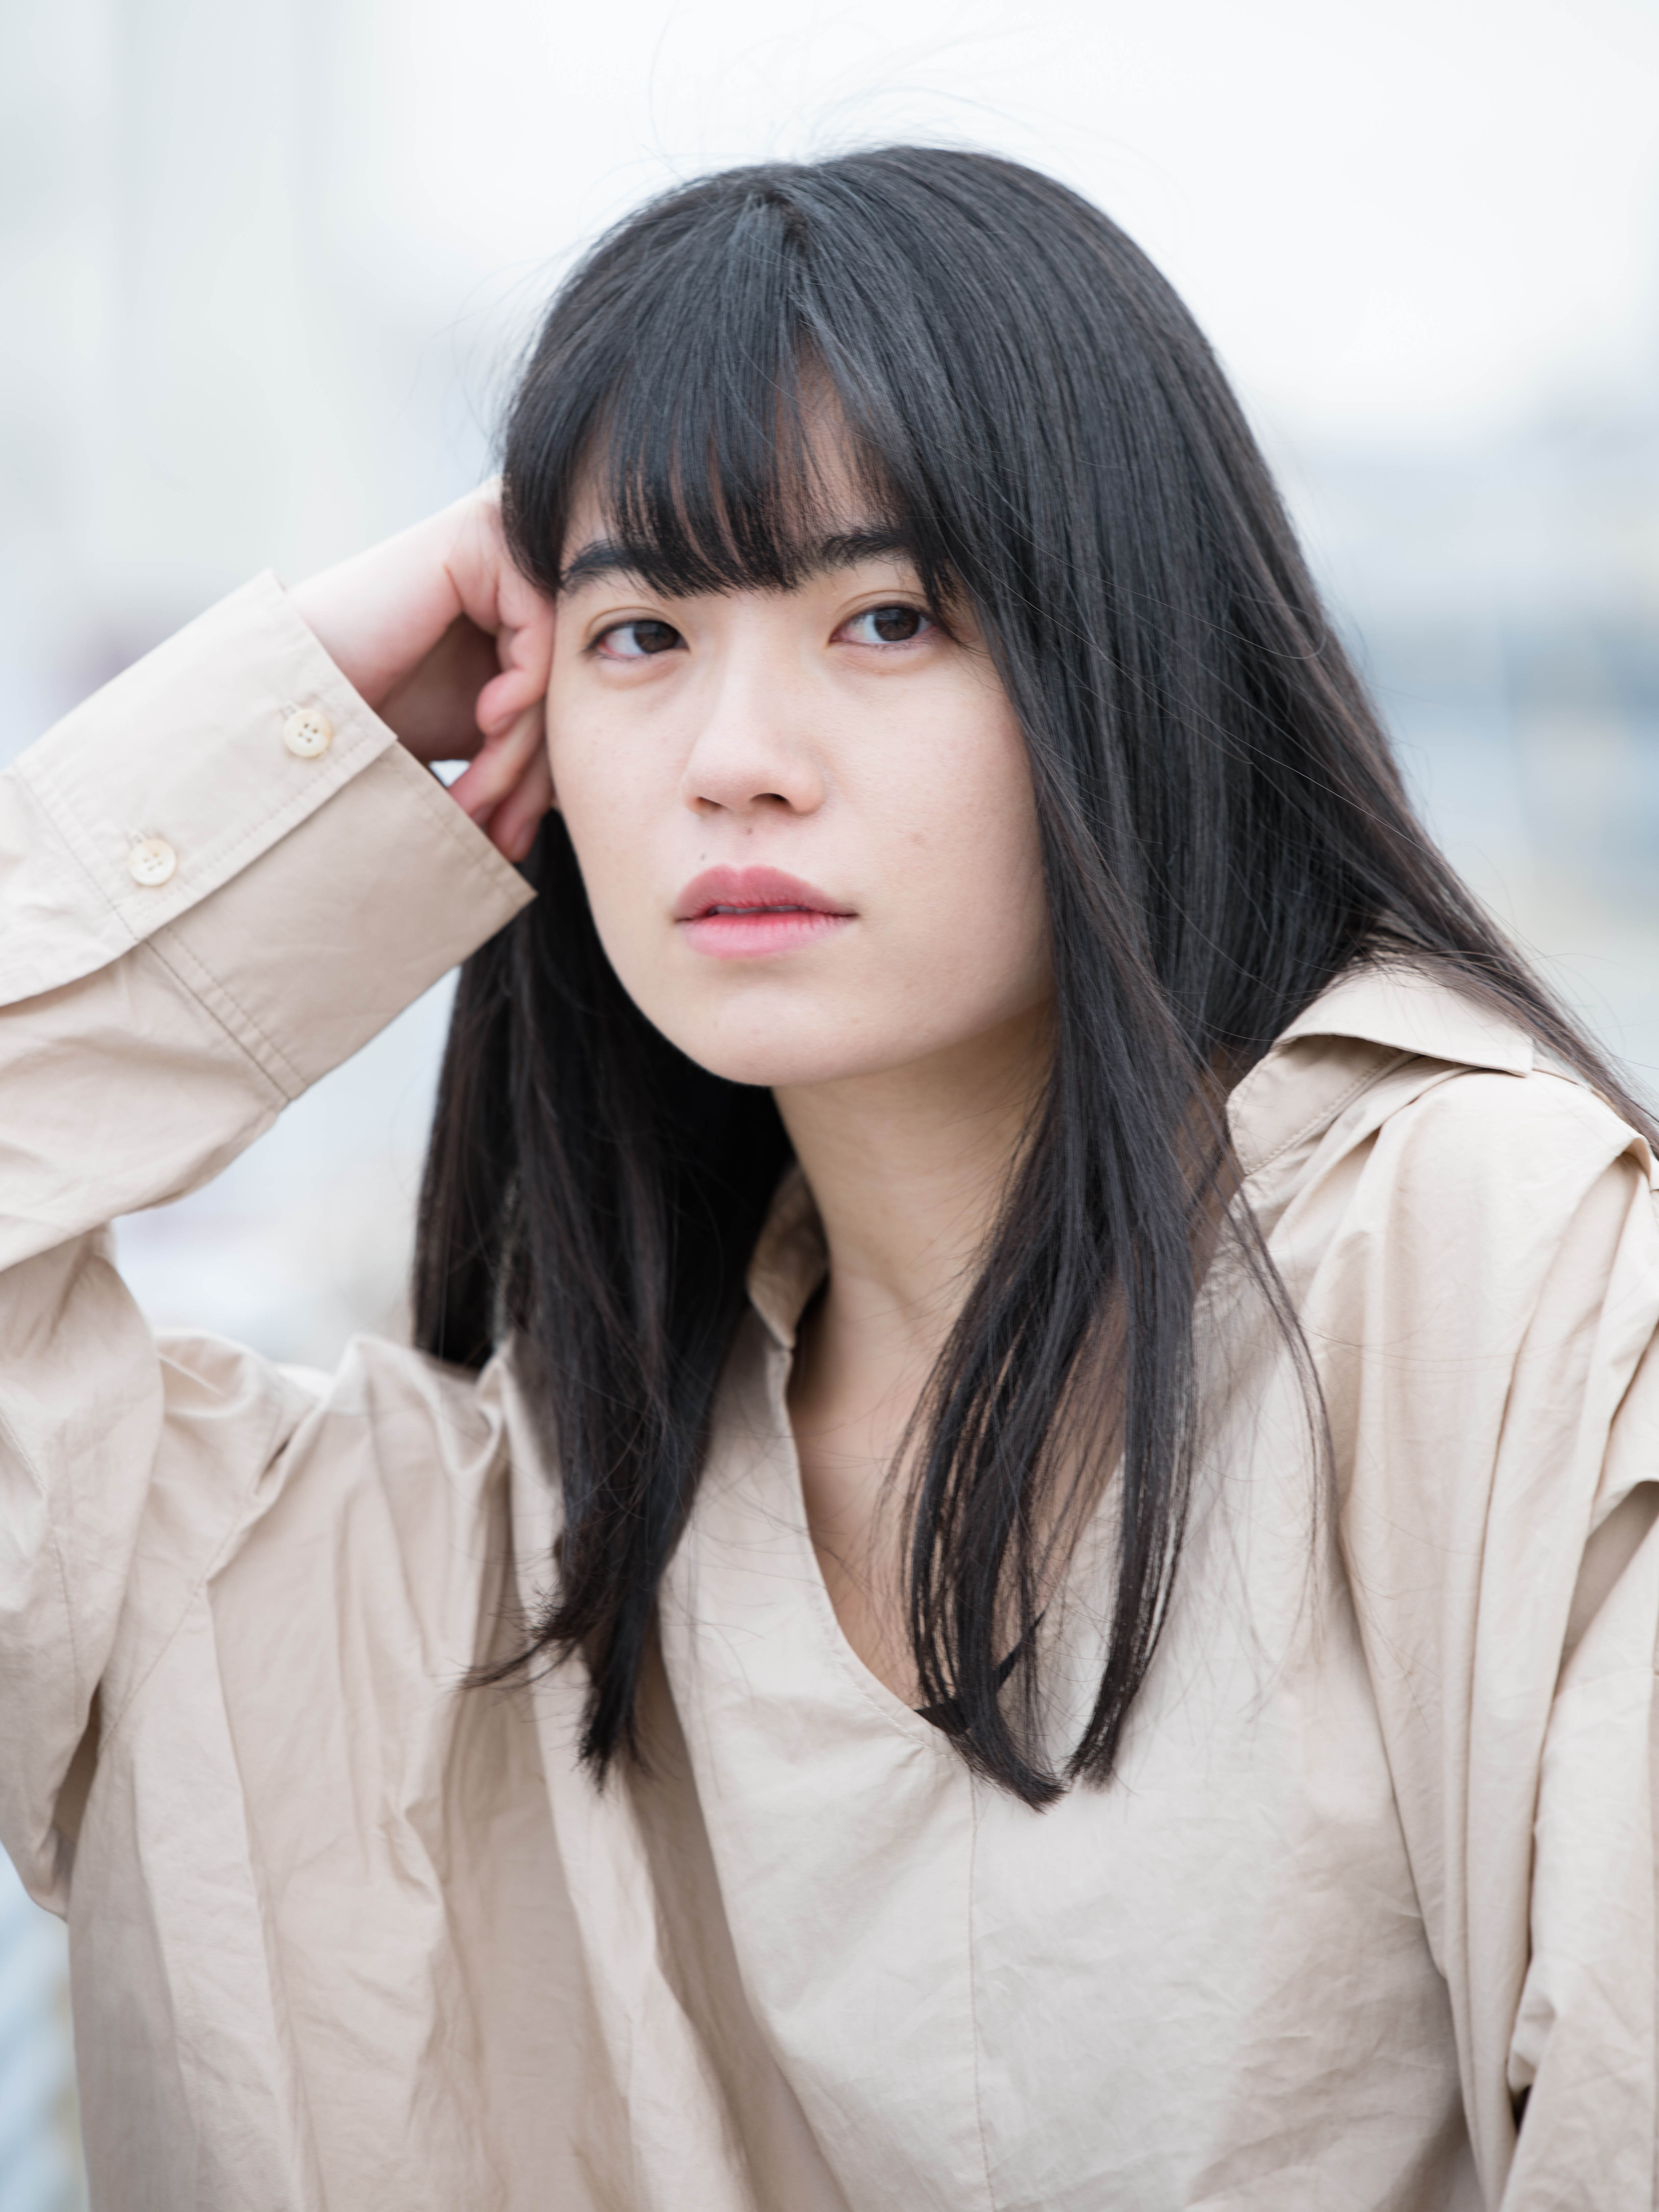 岡田 夏海 Profile Maimu 舞夢プロ 東京 大阪の芸能プロダクション